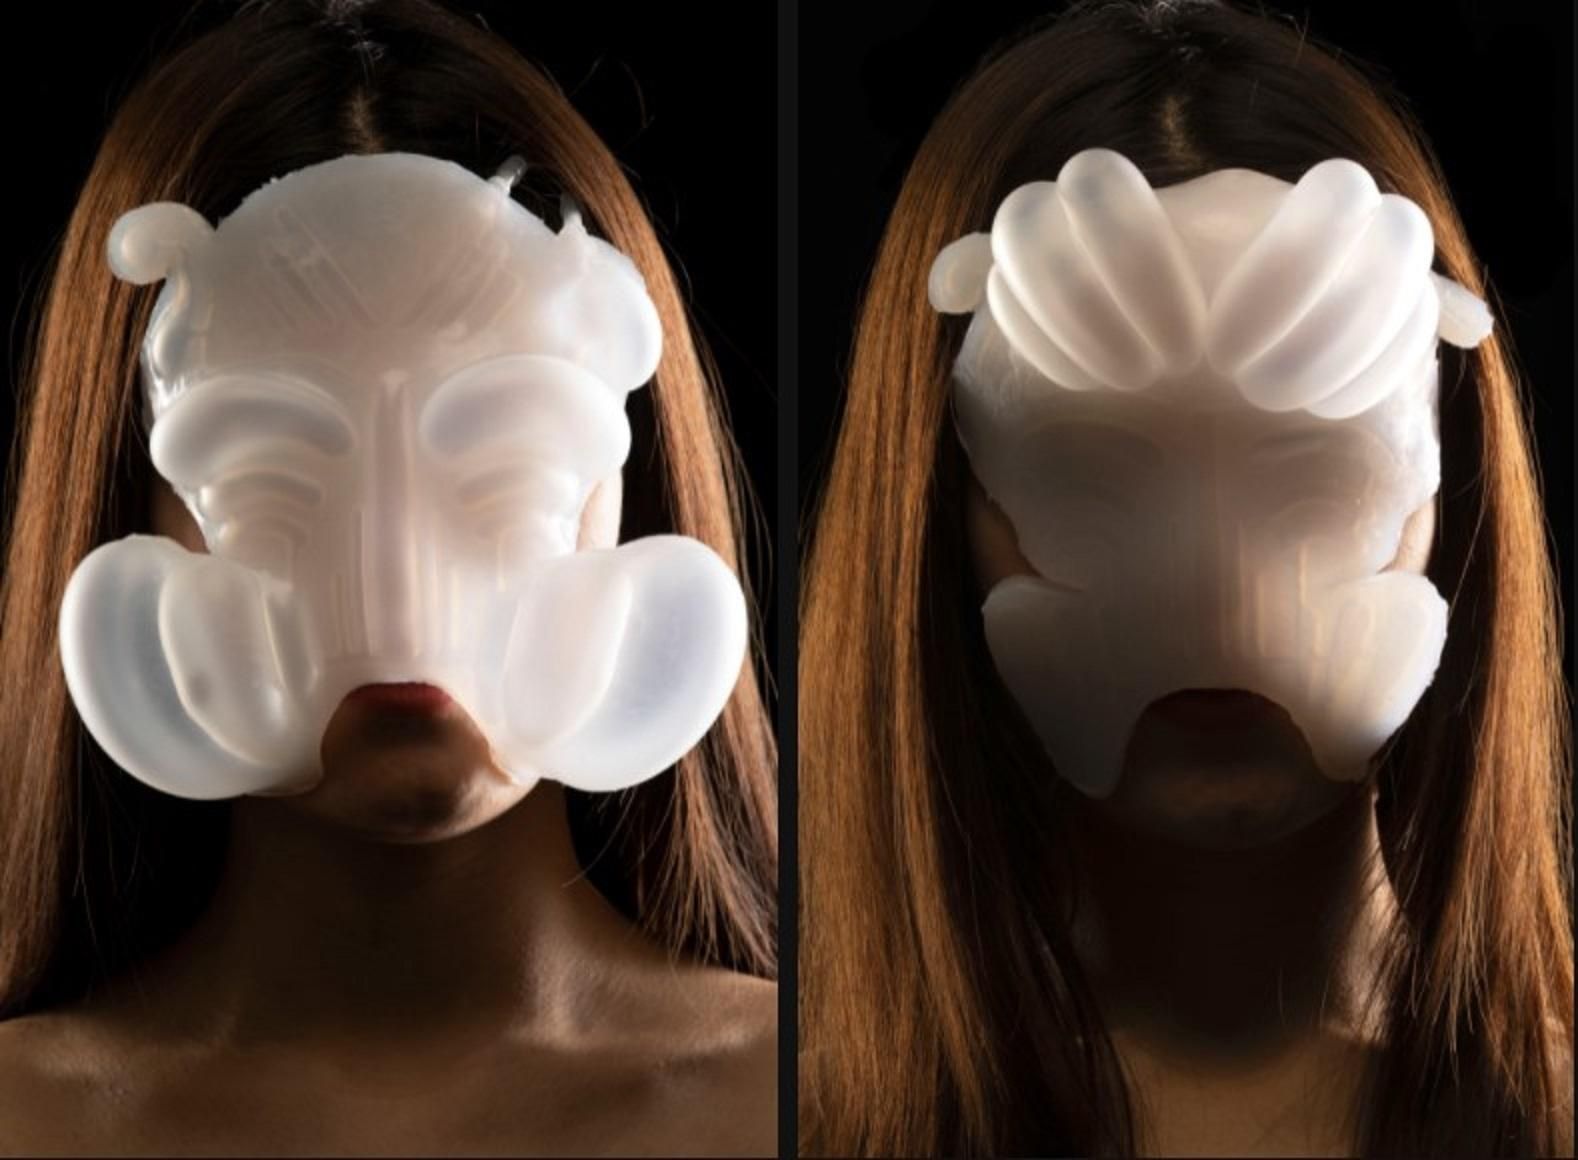 Розробниця створила дивну маску, яка реагує на поведінку в інтернеті - Новини технологій - Техно